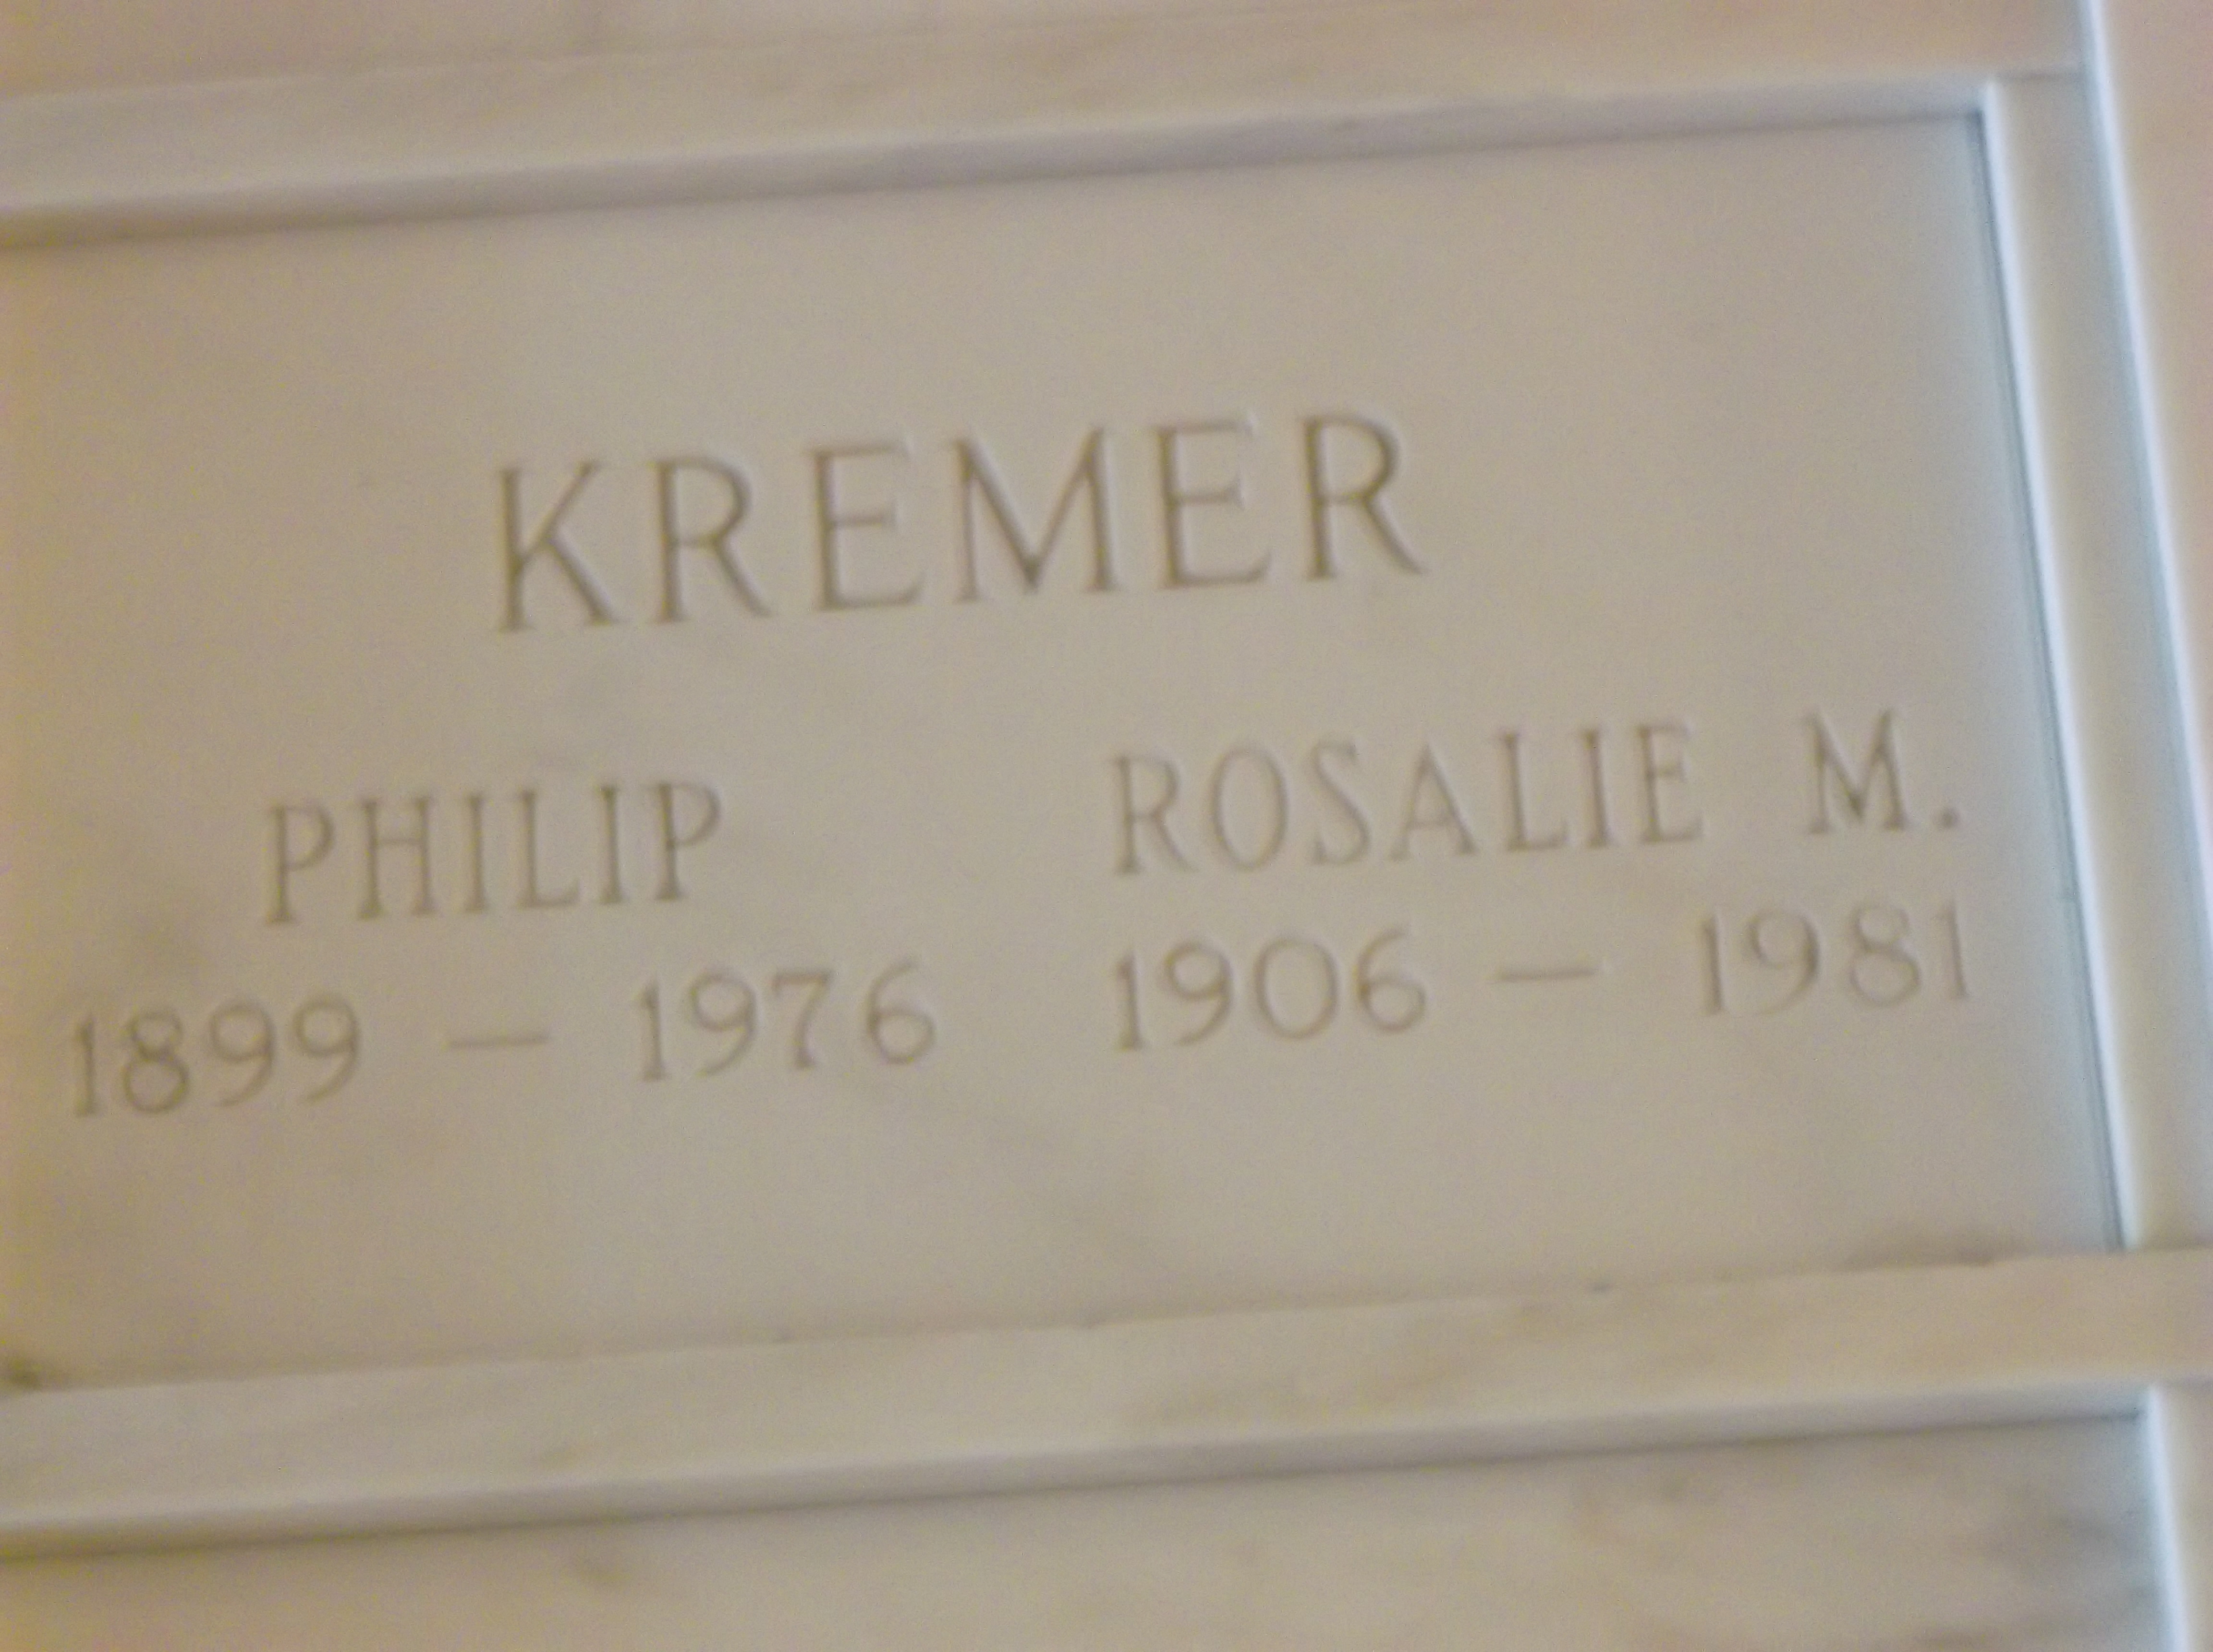 Rosalie M Kremer